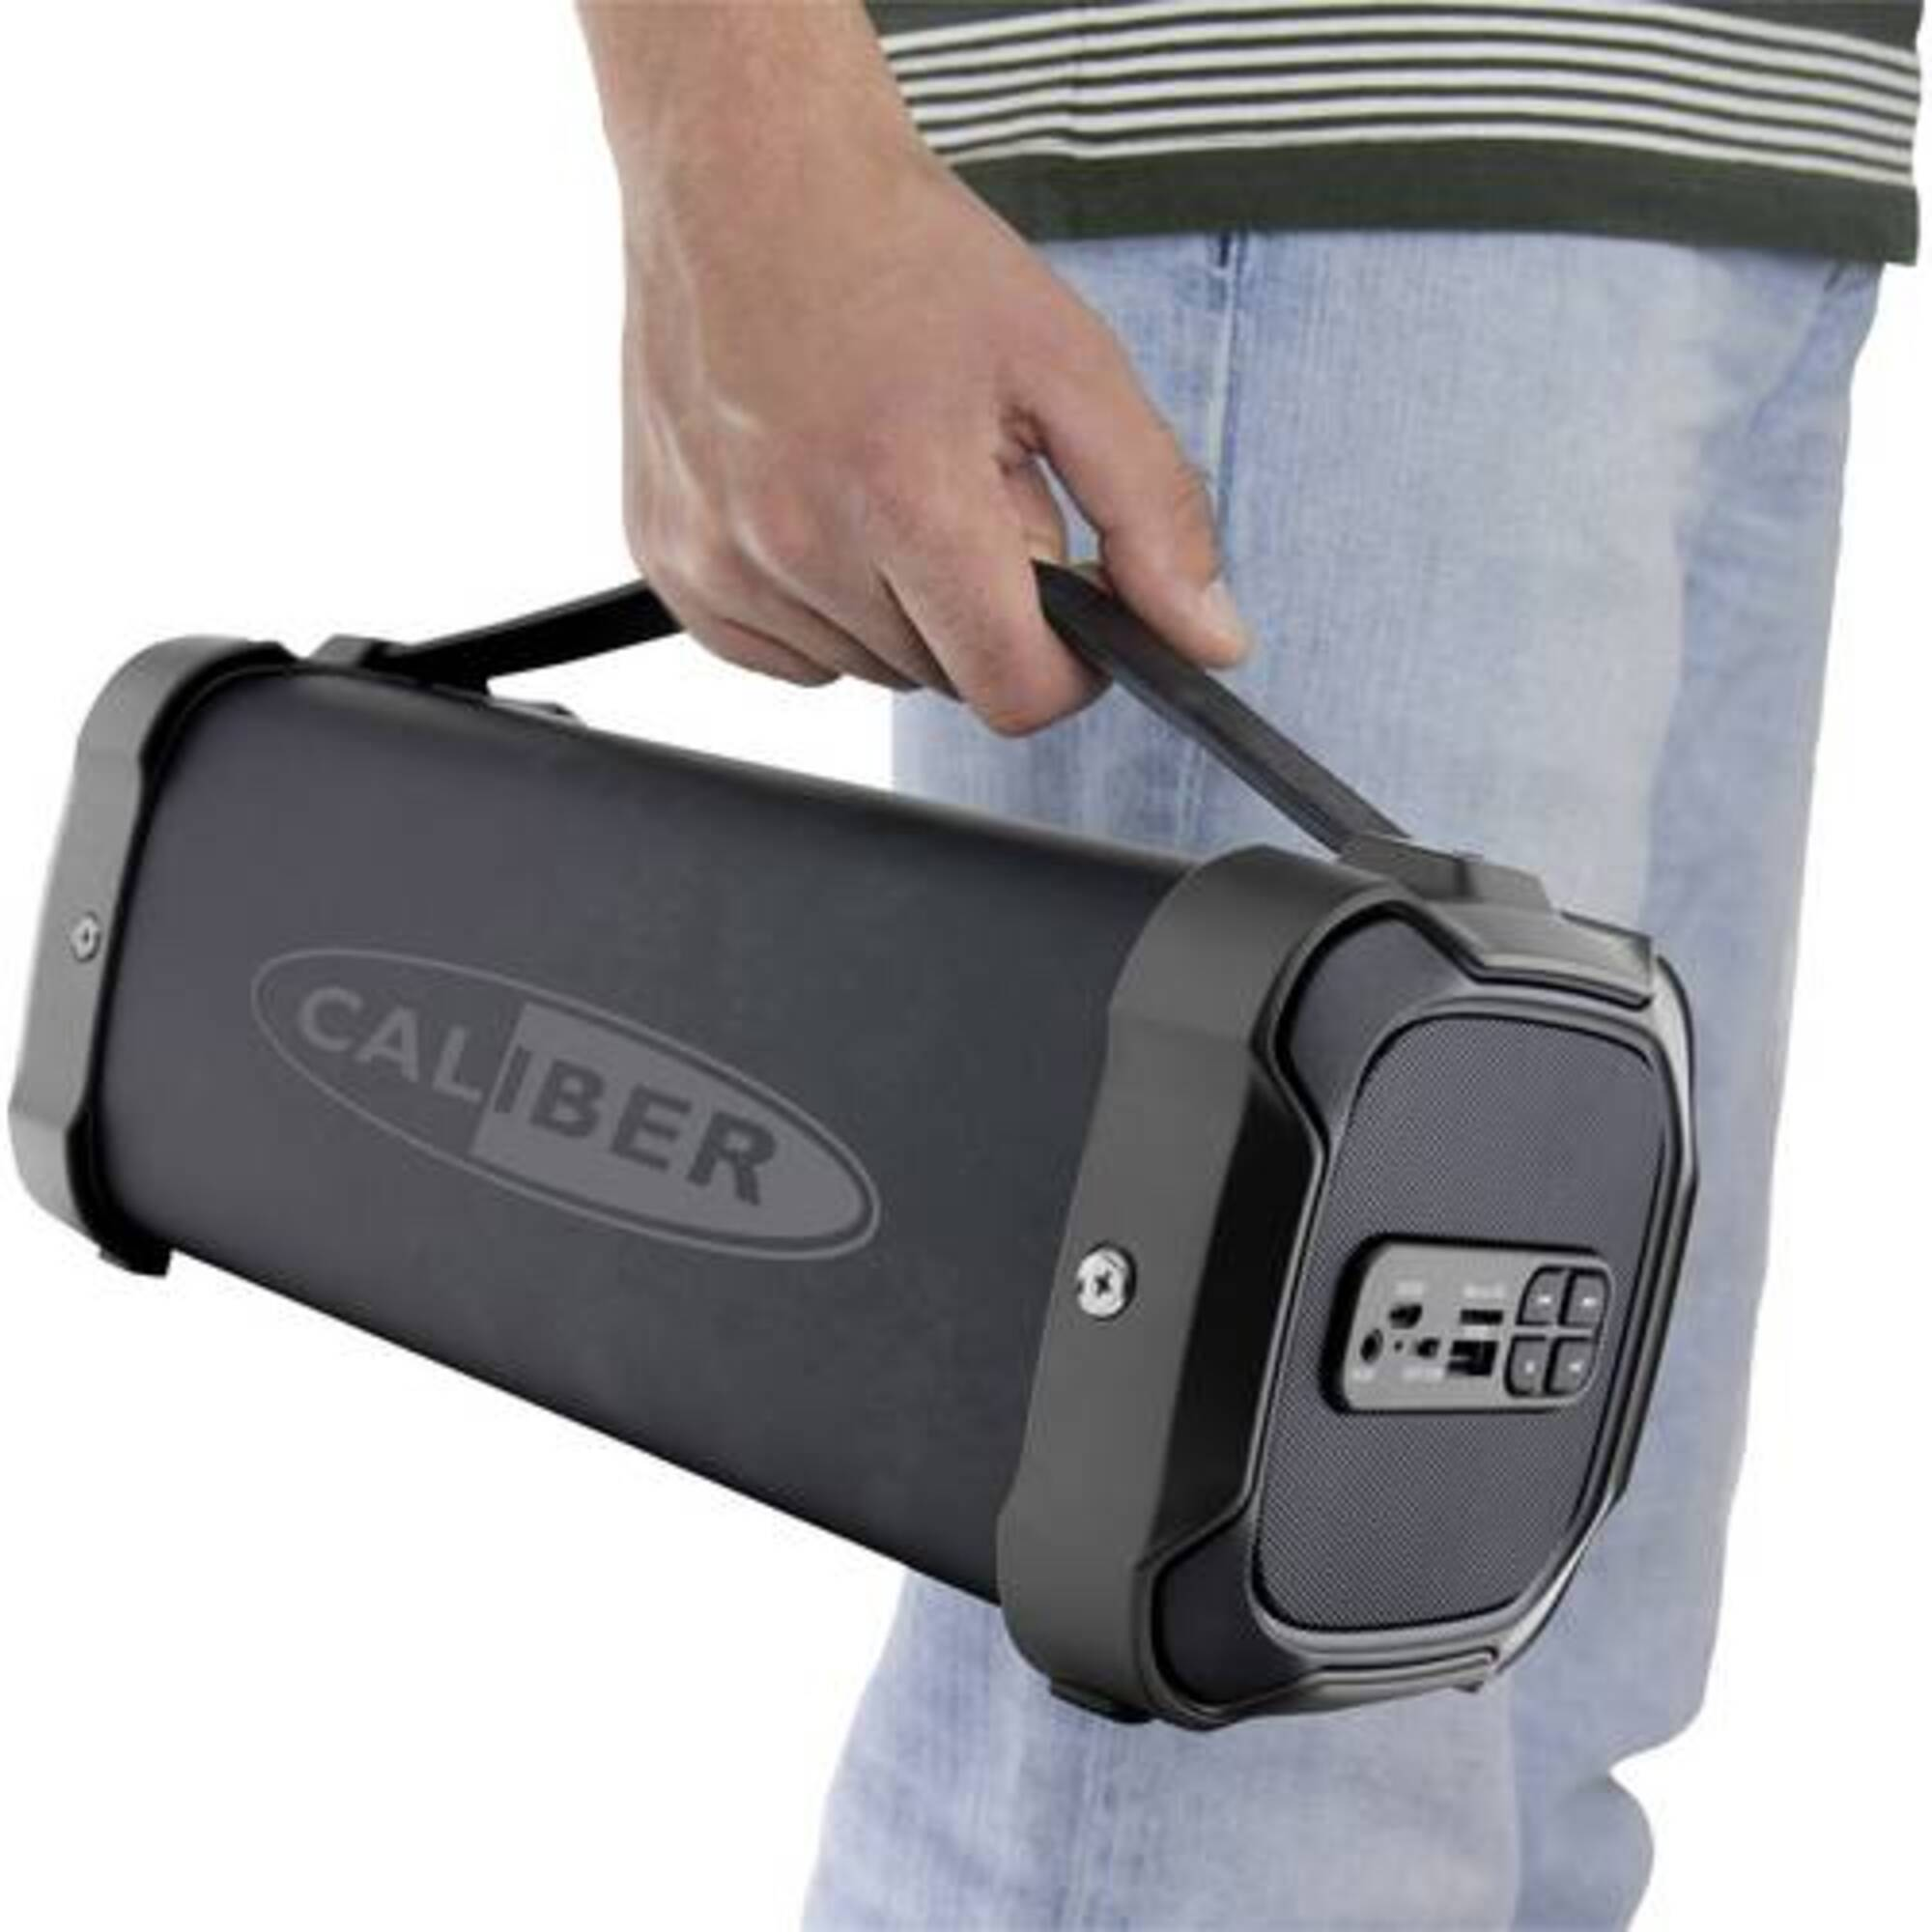 CALIBER Schwarz HPG525BT Bluetooth Lautsprecher,